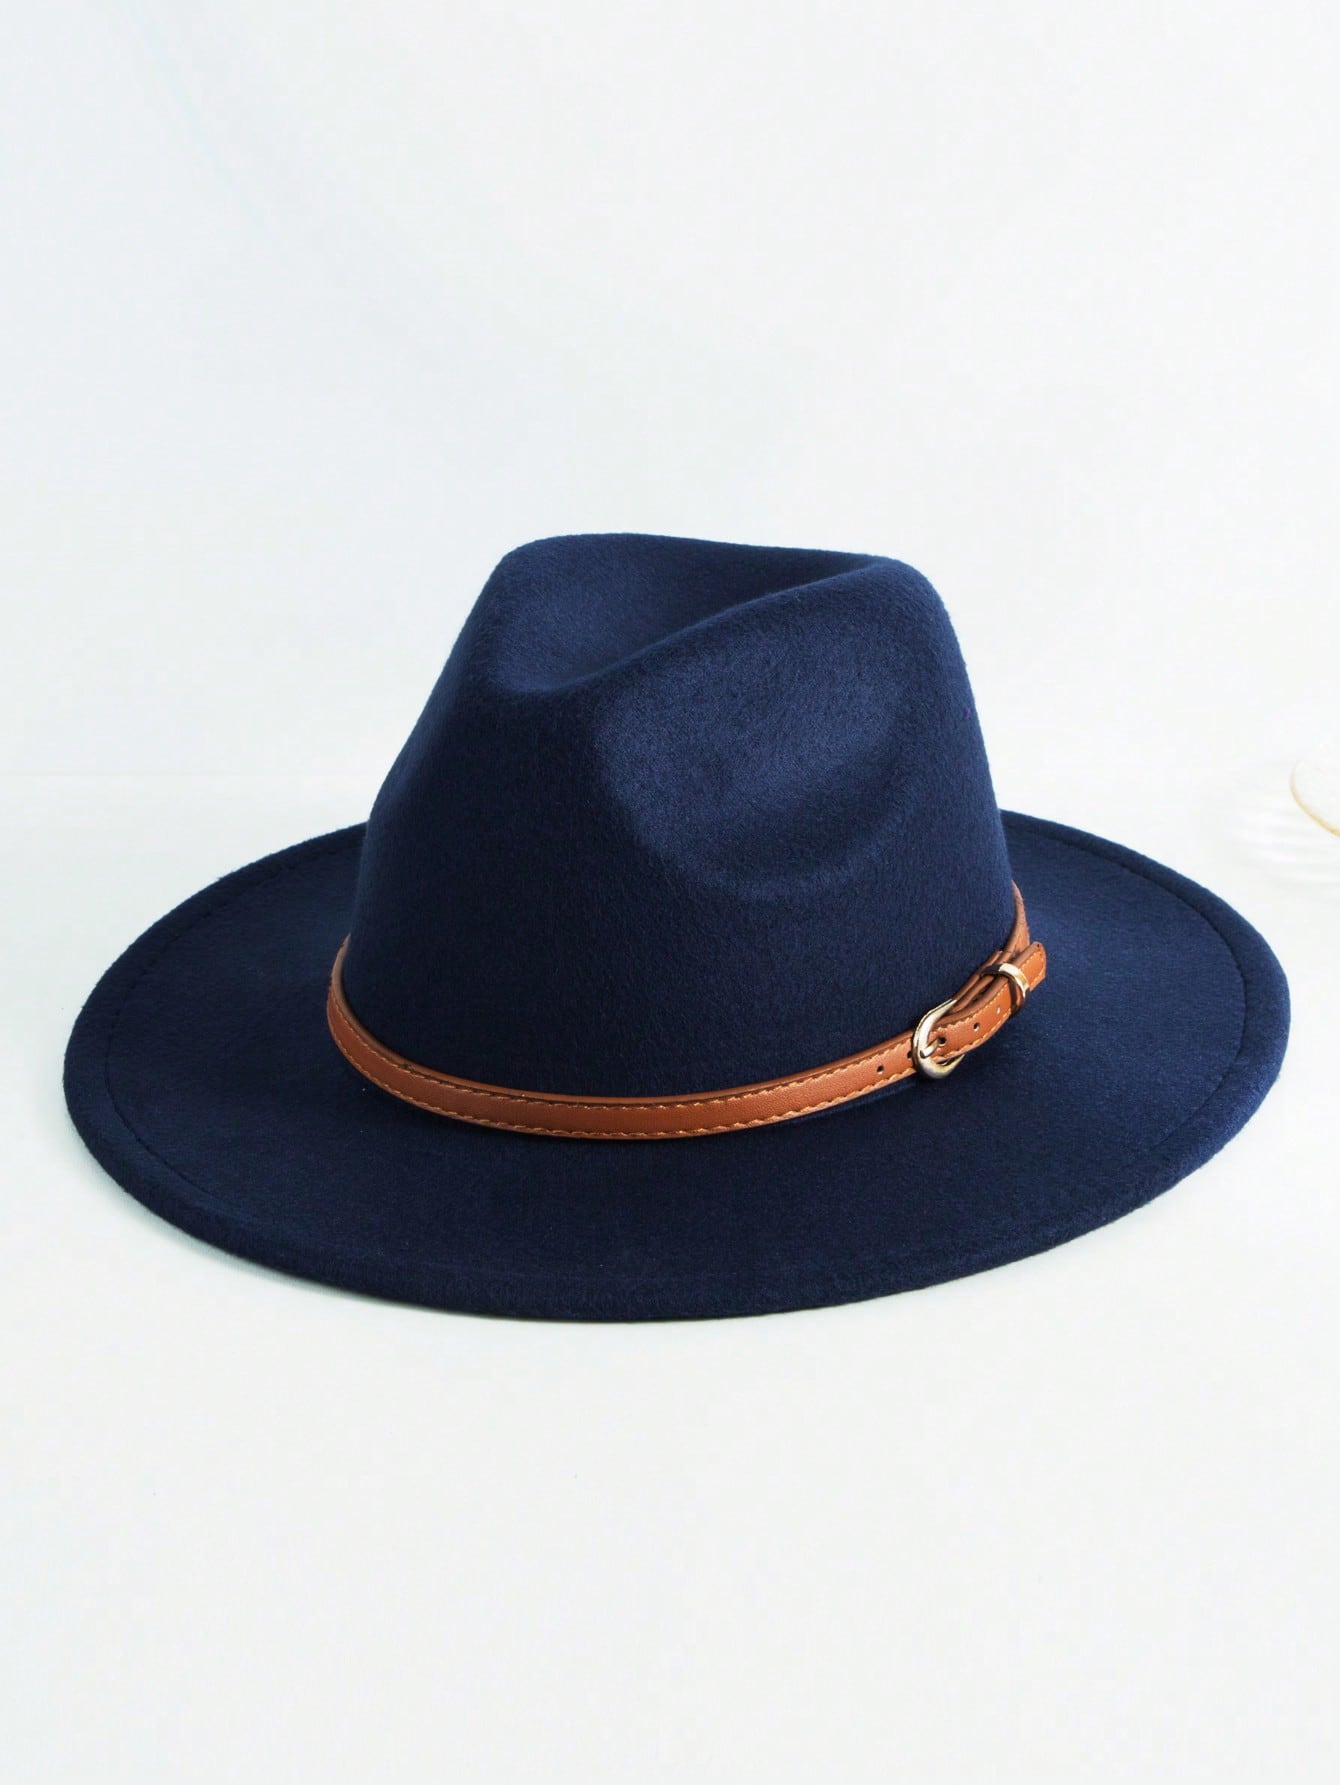 Мужской пояс с декором шляпа Fedora, темно-синий